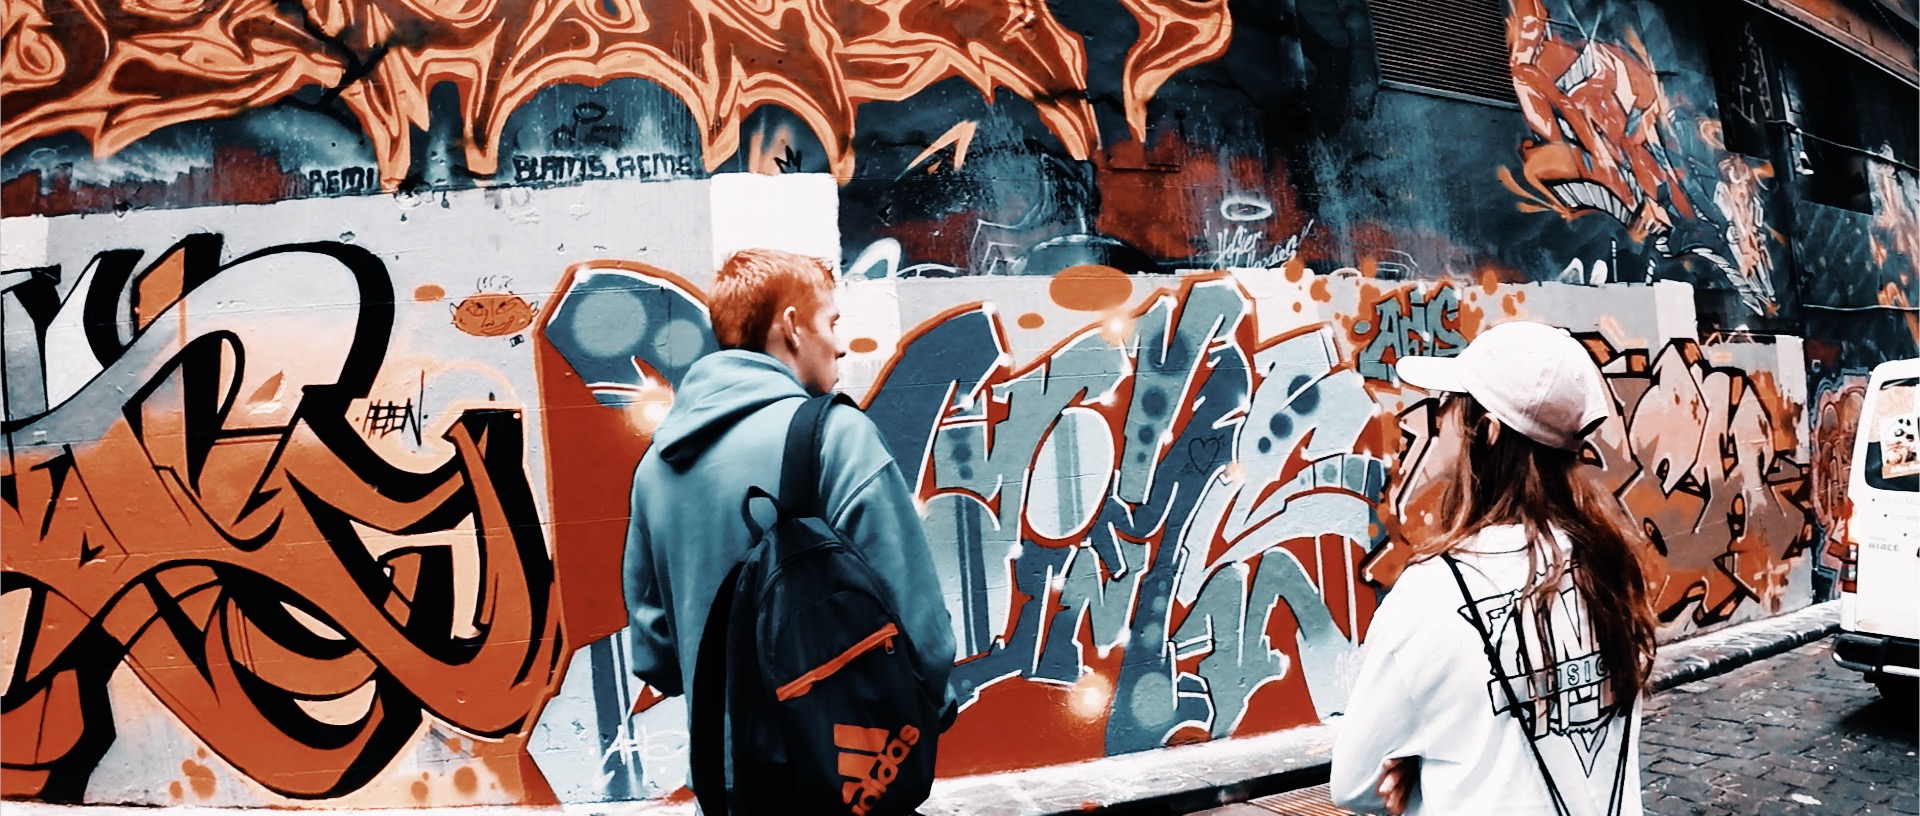 hozier lane graffiti art in Melbourne Australia, shot on GoPro hero black